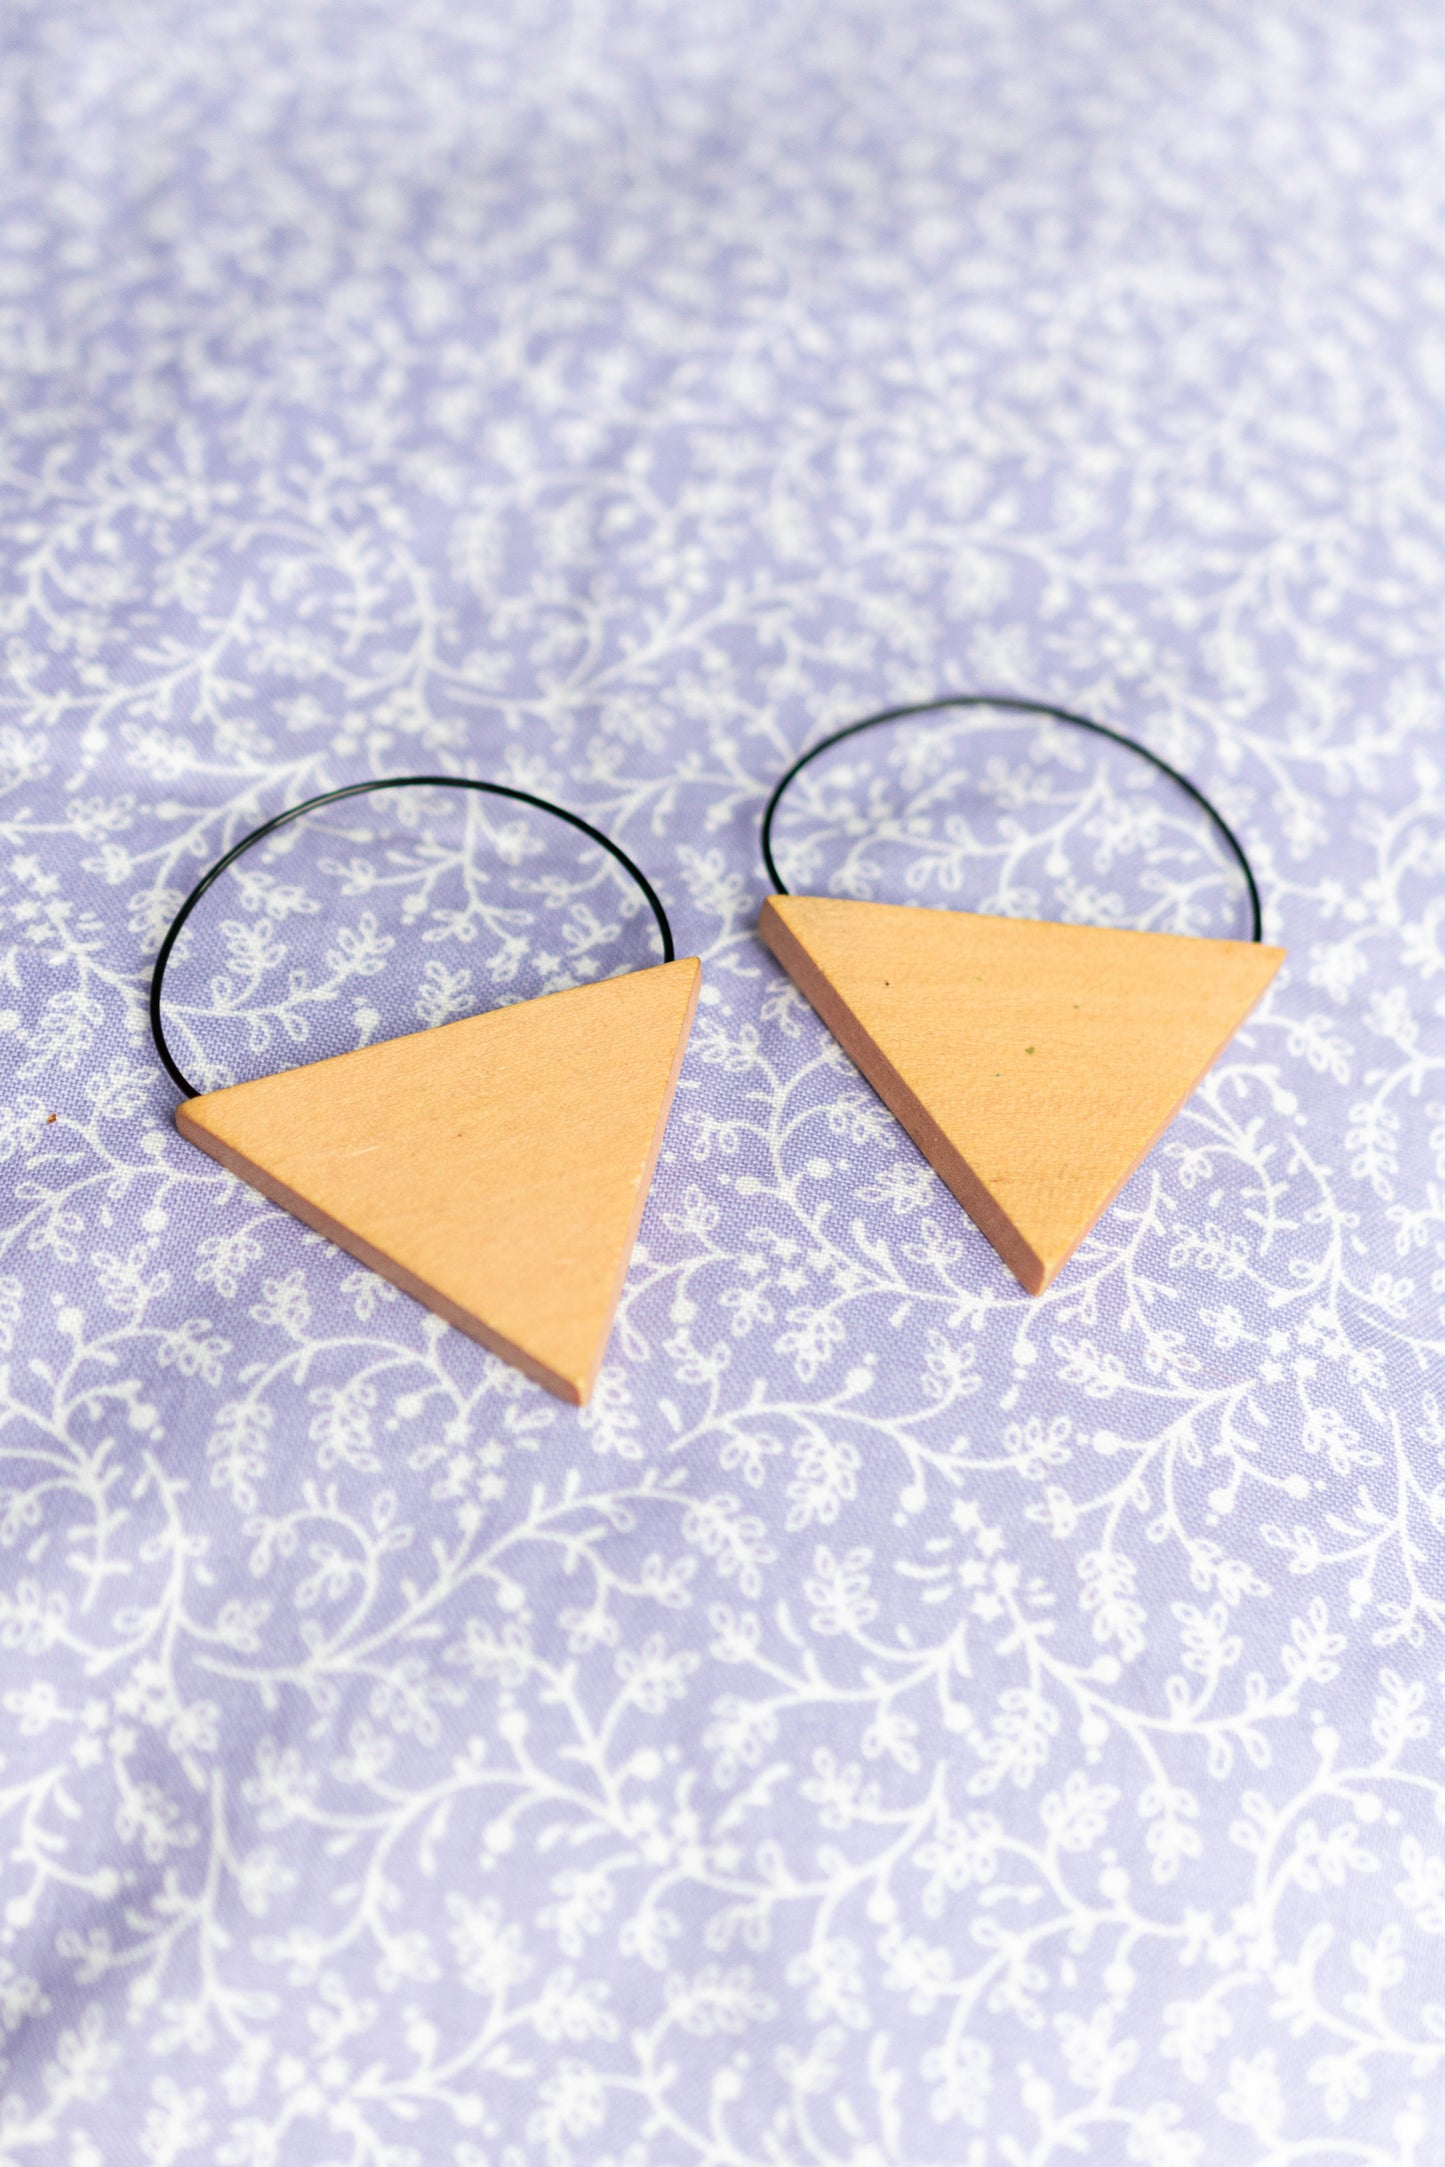 NEW IN! Triangle earrings